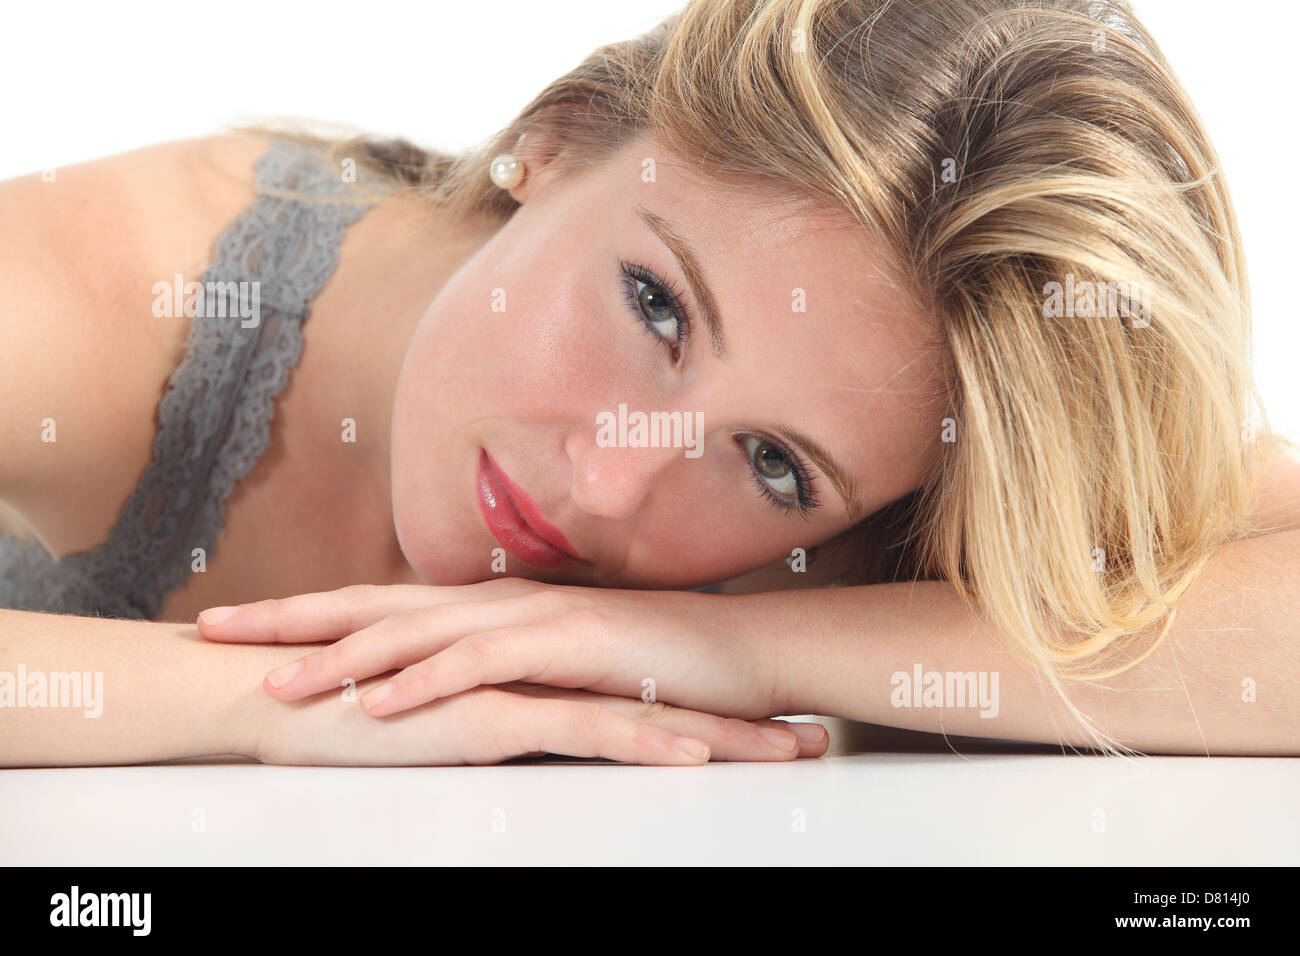 Ritratto di una donna bella faccia isolata su uno sfondo bianco Foto Stock